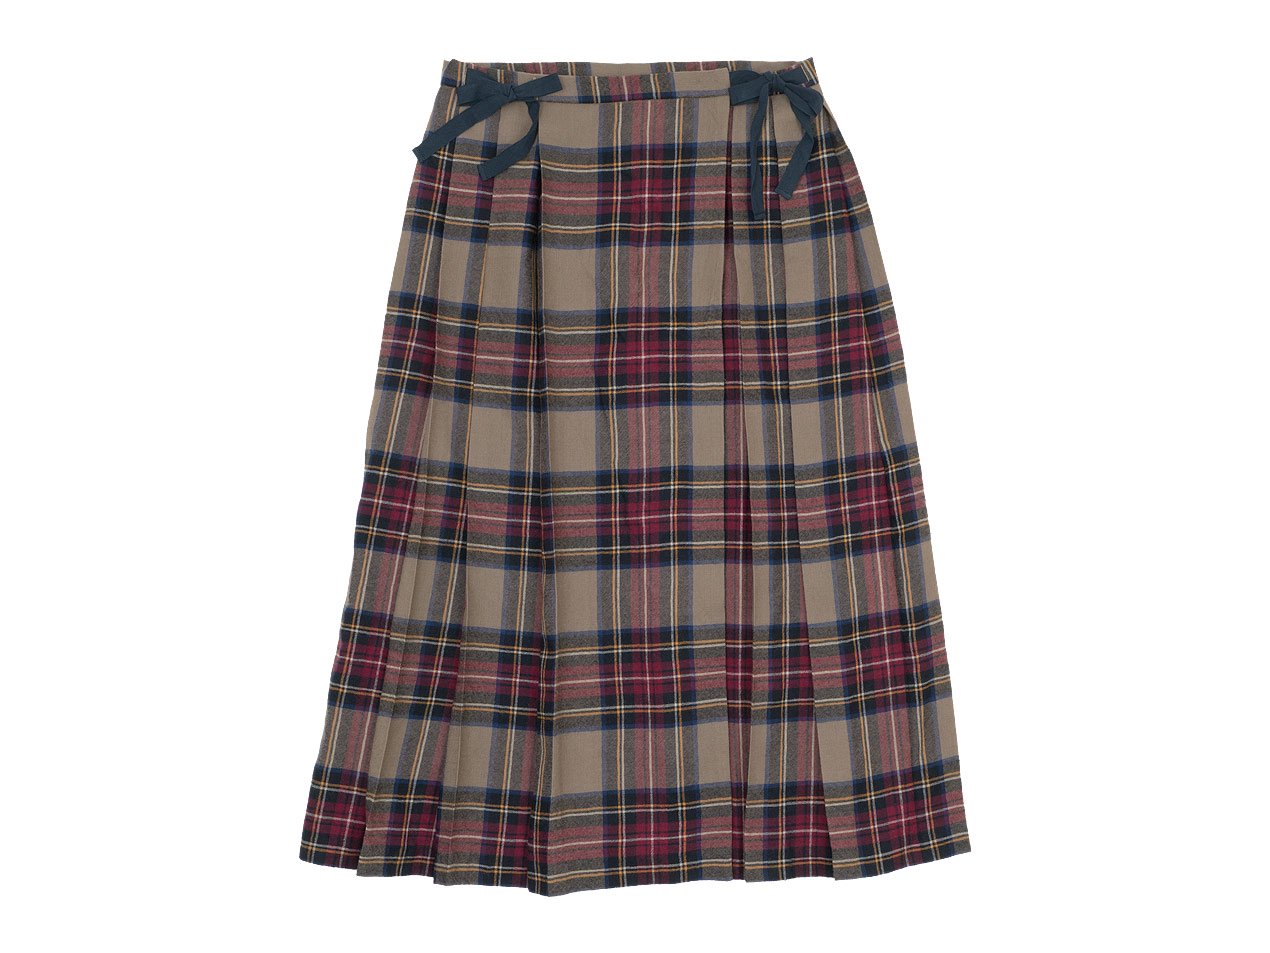 TOUJOURS Kilt Pleated Long Skirt BROWN TM31IK03